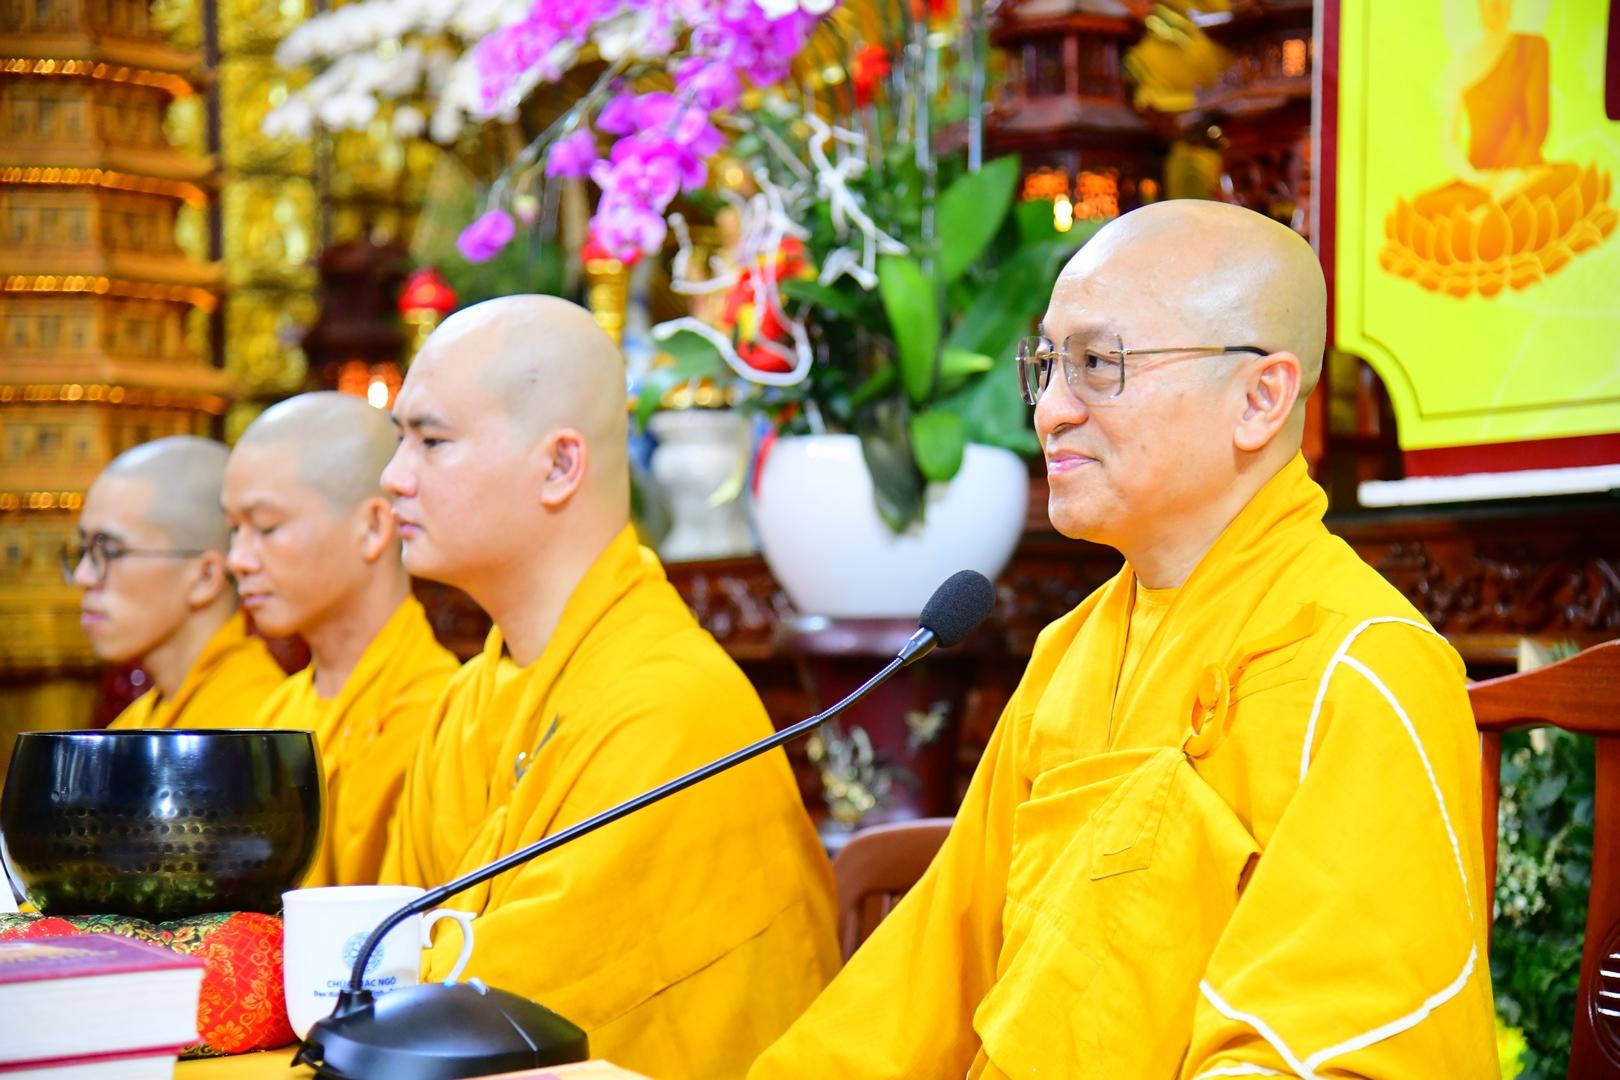 Gần 500 thiện nam, tín nữ chính thức trở thành đệ tử Phật